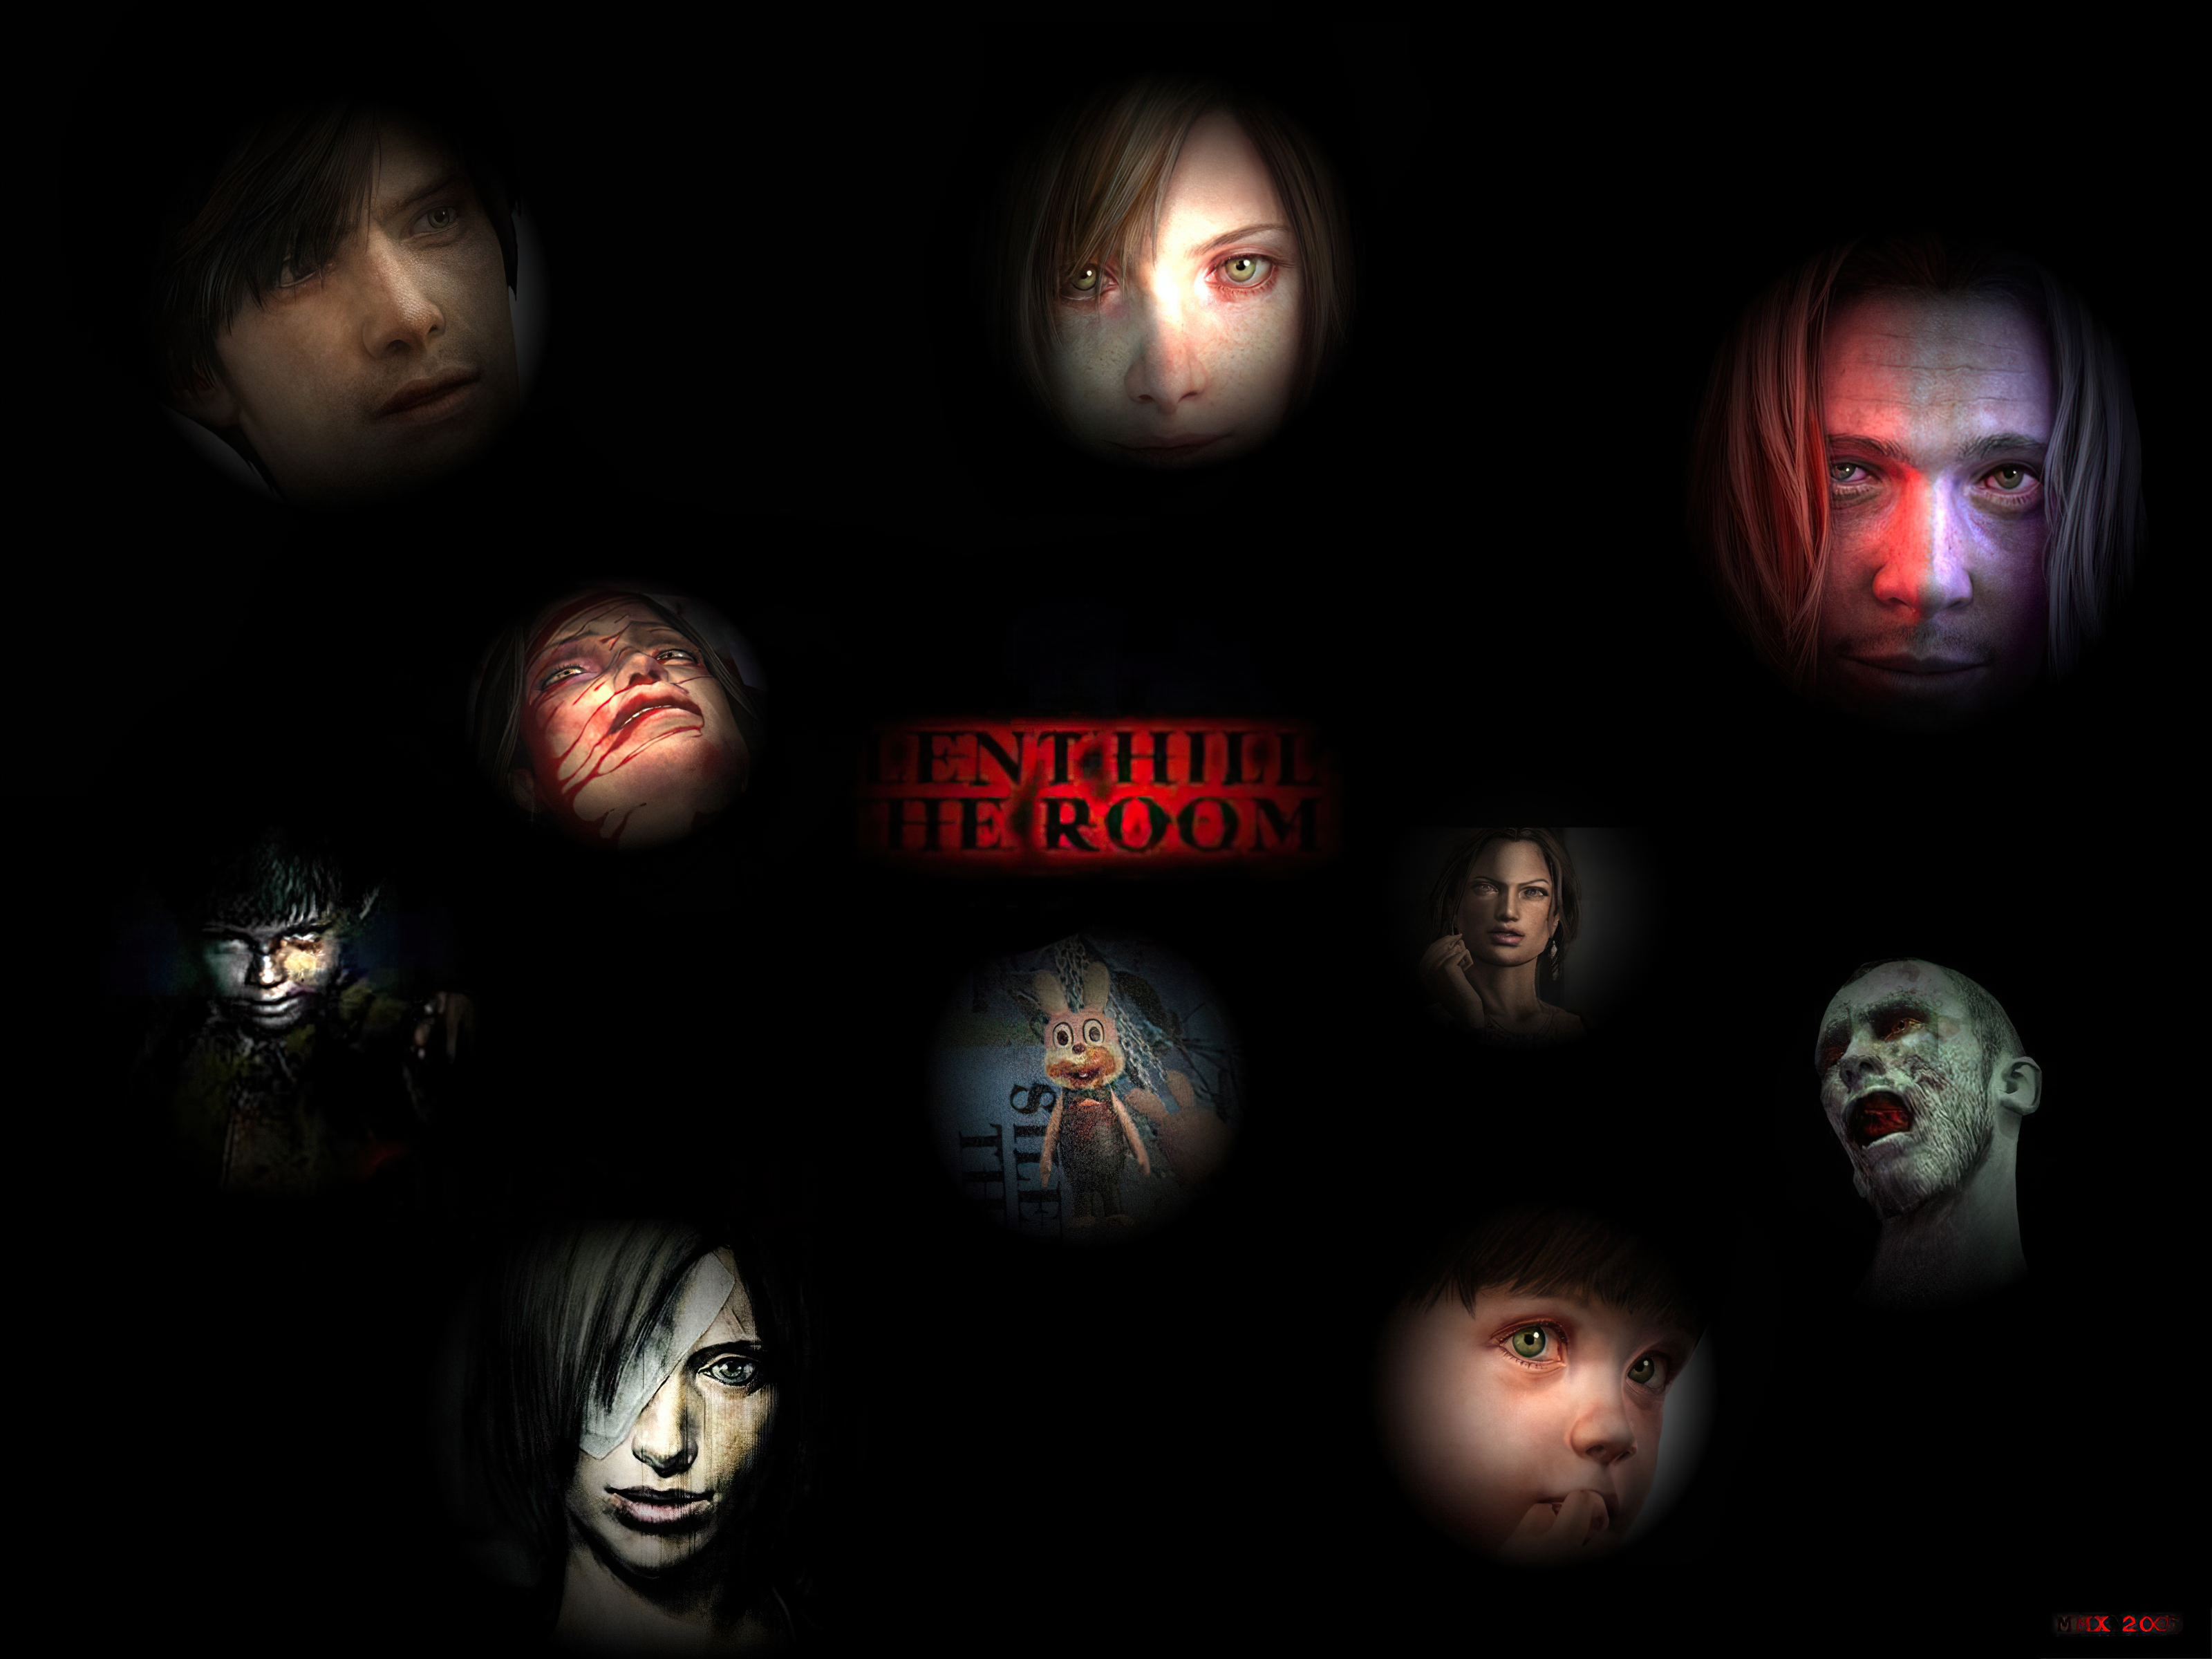 Melhores papéis de parede de Silent Hill 4: The Room para tela do telefone